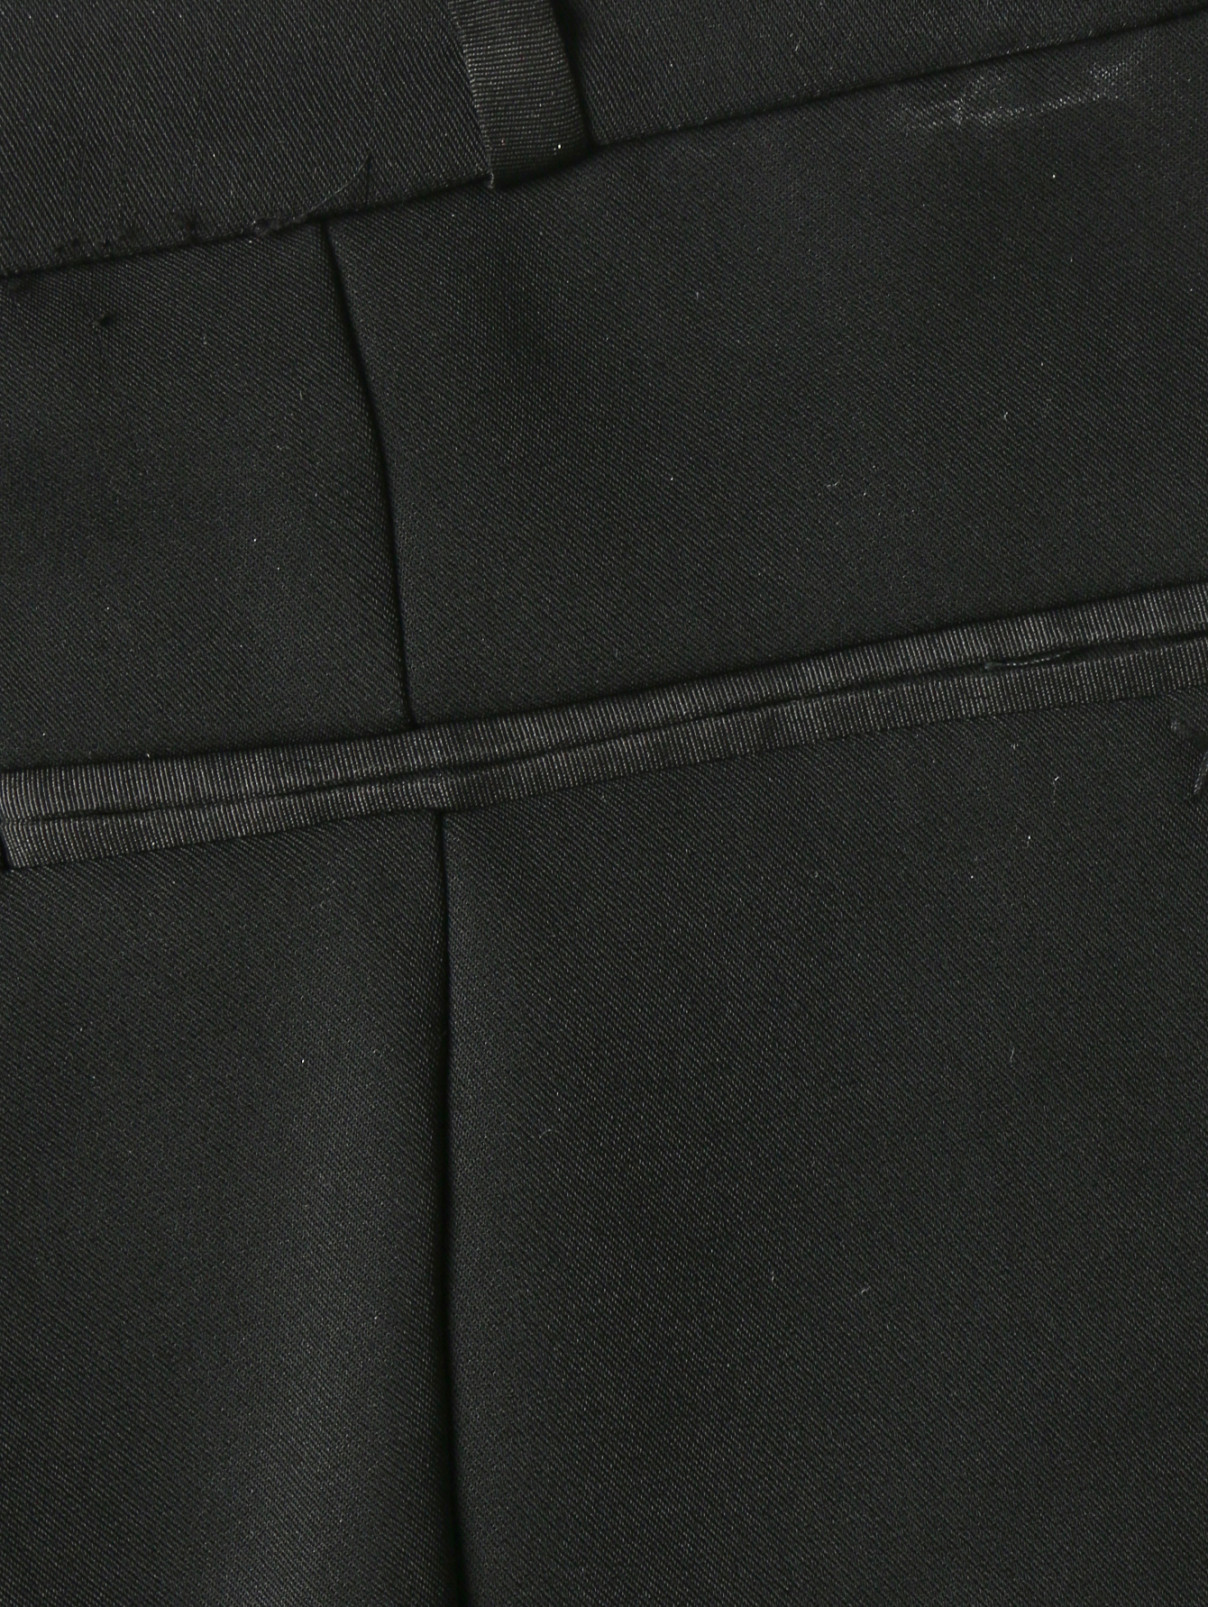 Узкие брюки со стрелками Elizabeth & James  –  Деталь  – Цвет:  Черный